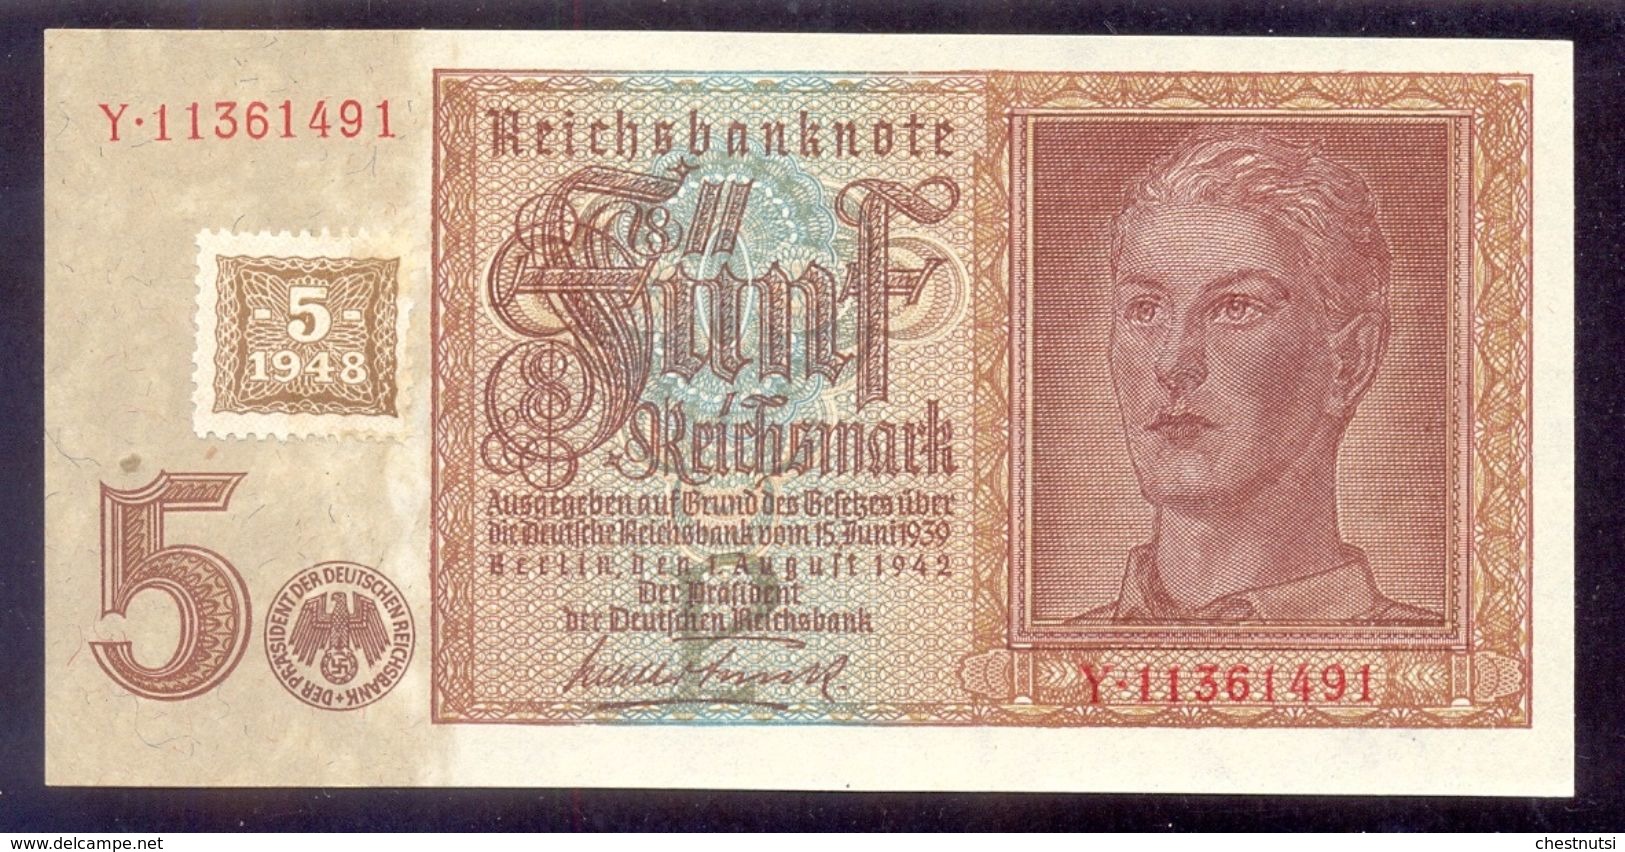 GERMANY - DEMOCRATIC REPUBLIC 5 Deutsche Mark 1948 P3  AUNC/UNC - 1 Deutsche Mark